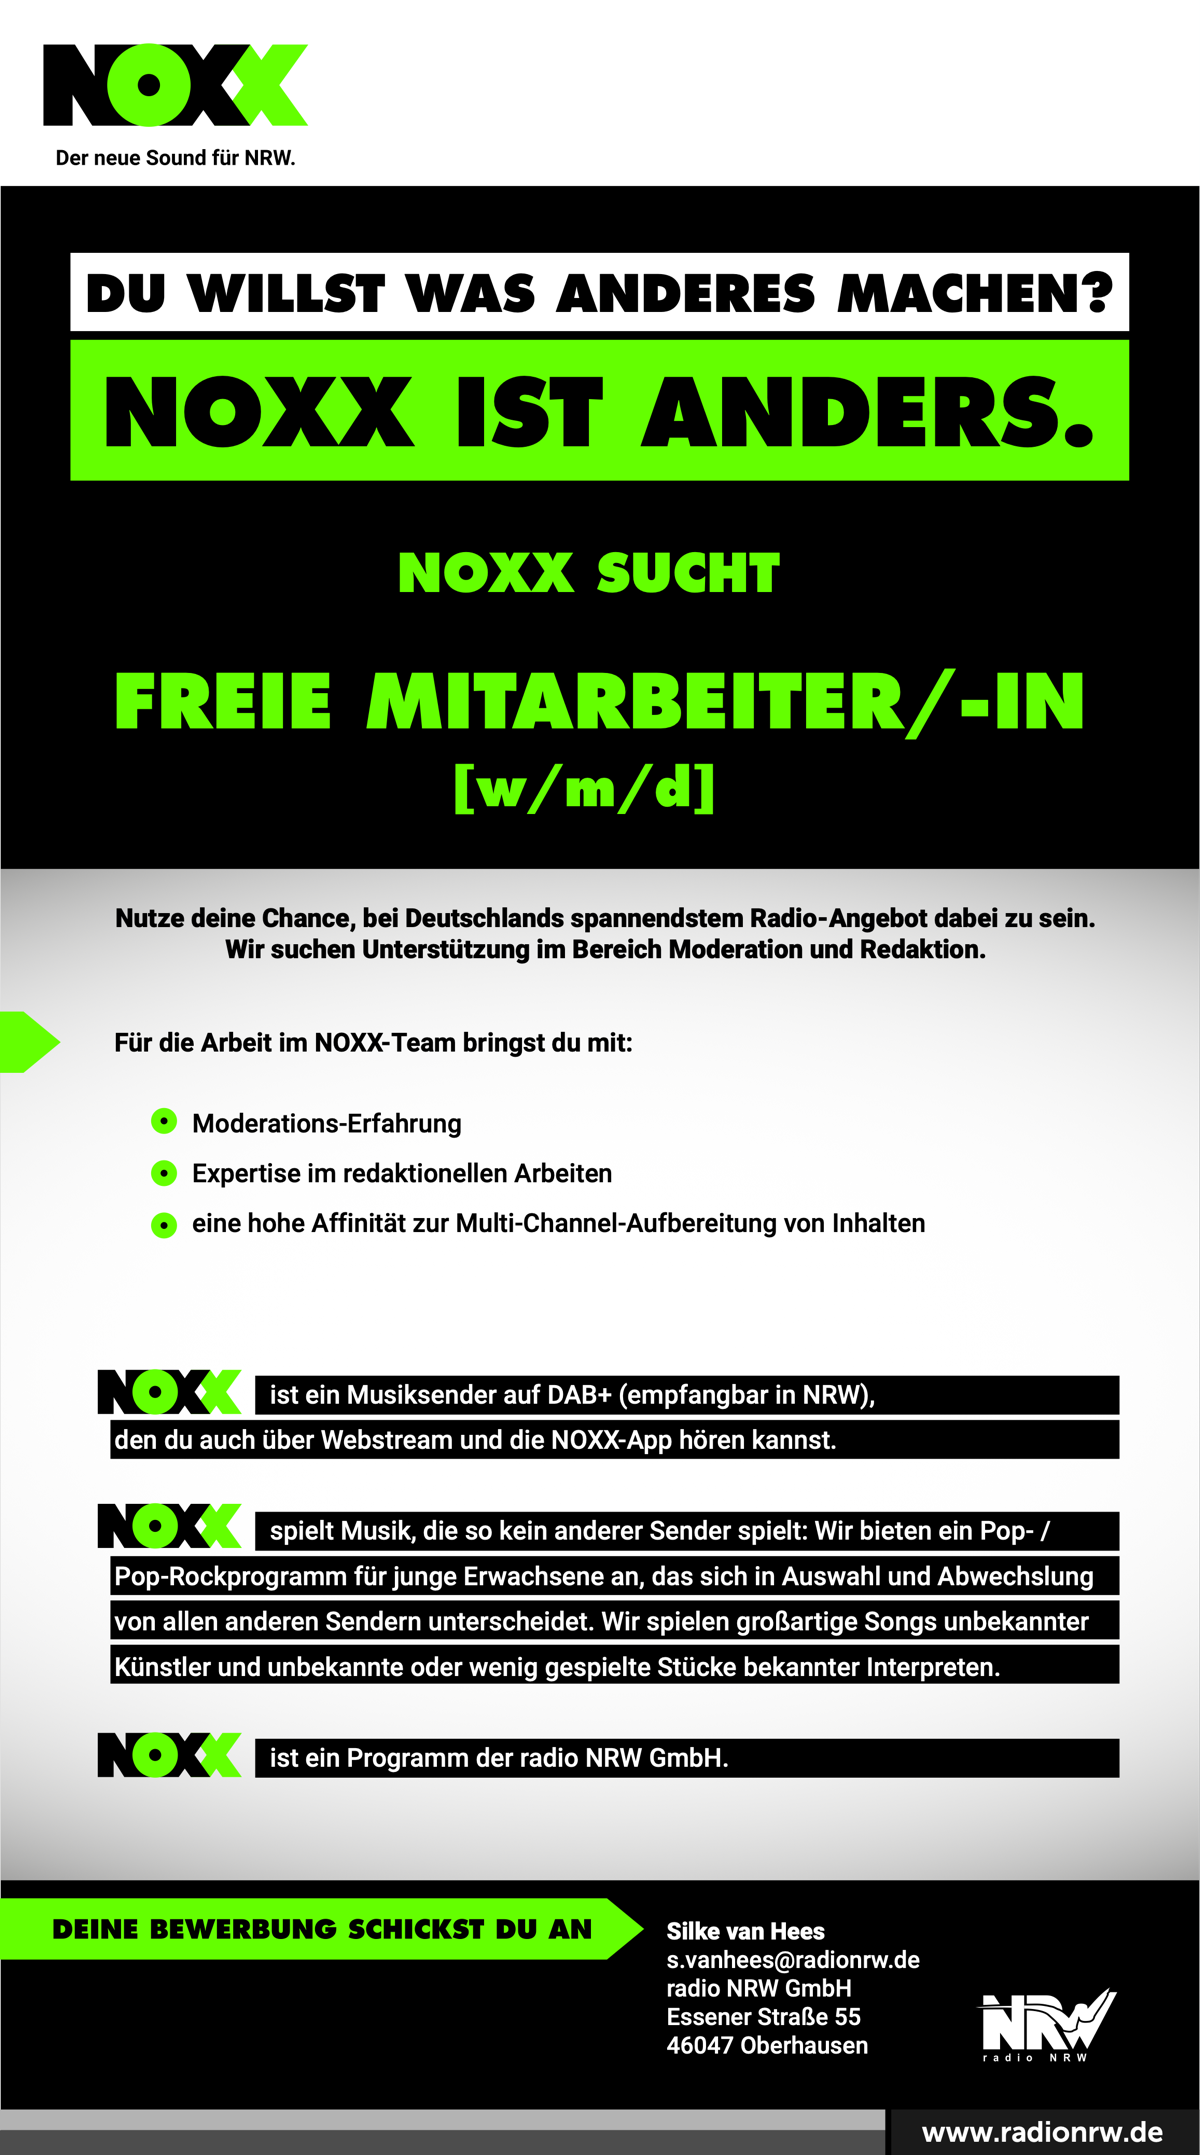 NOXX sucht freie Mitarbeiter/-in (w/m/d)